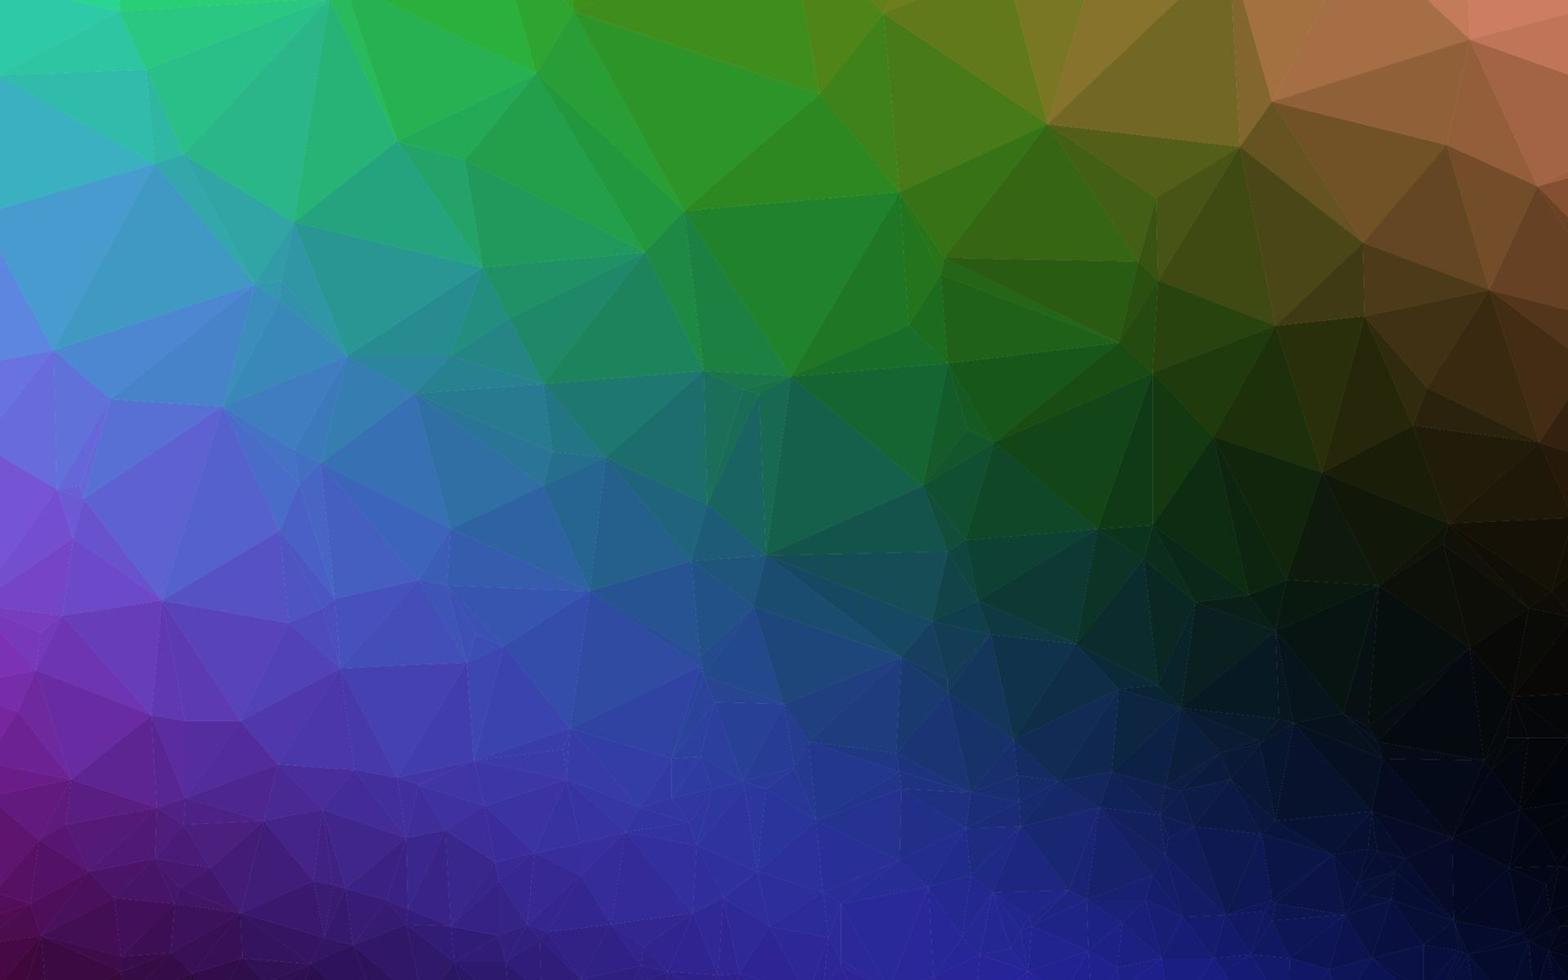 dunkle mehrfarbige, regenbogenfarbene, verschwommene Dreiecksbeschaffenheit. vektor